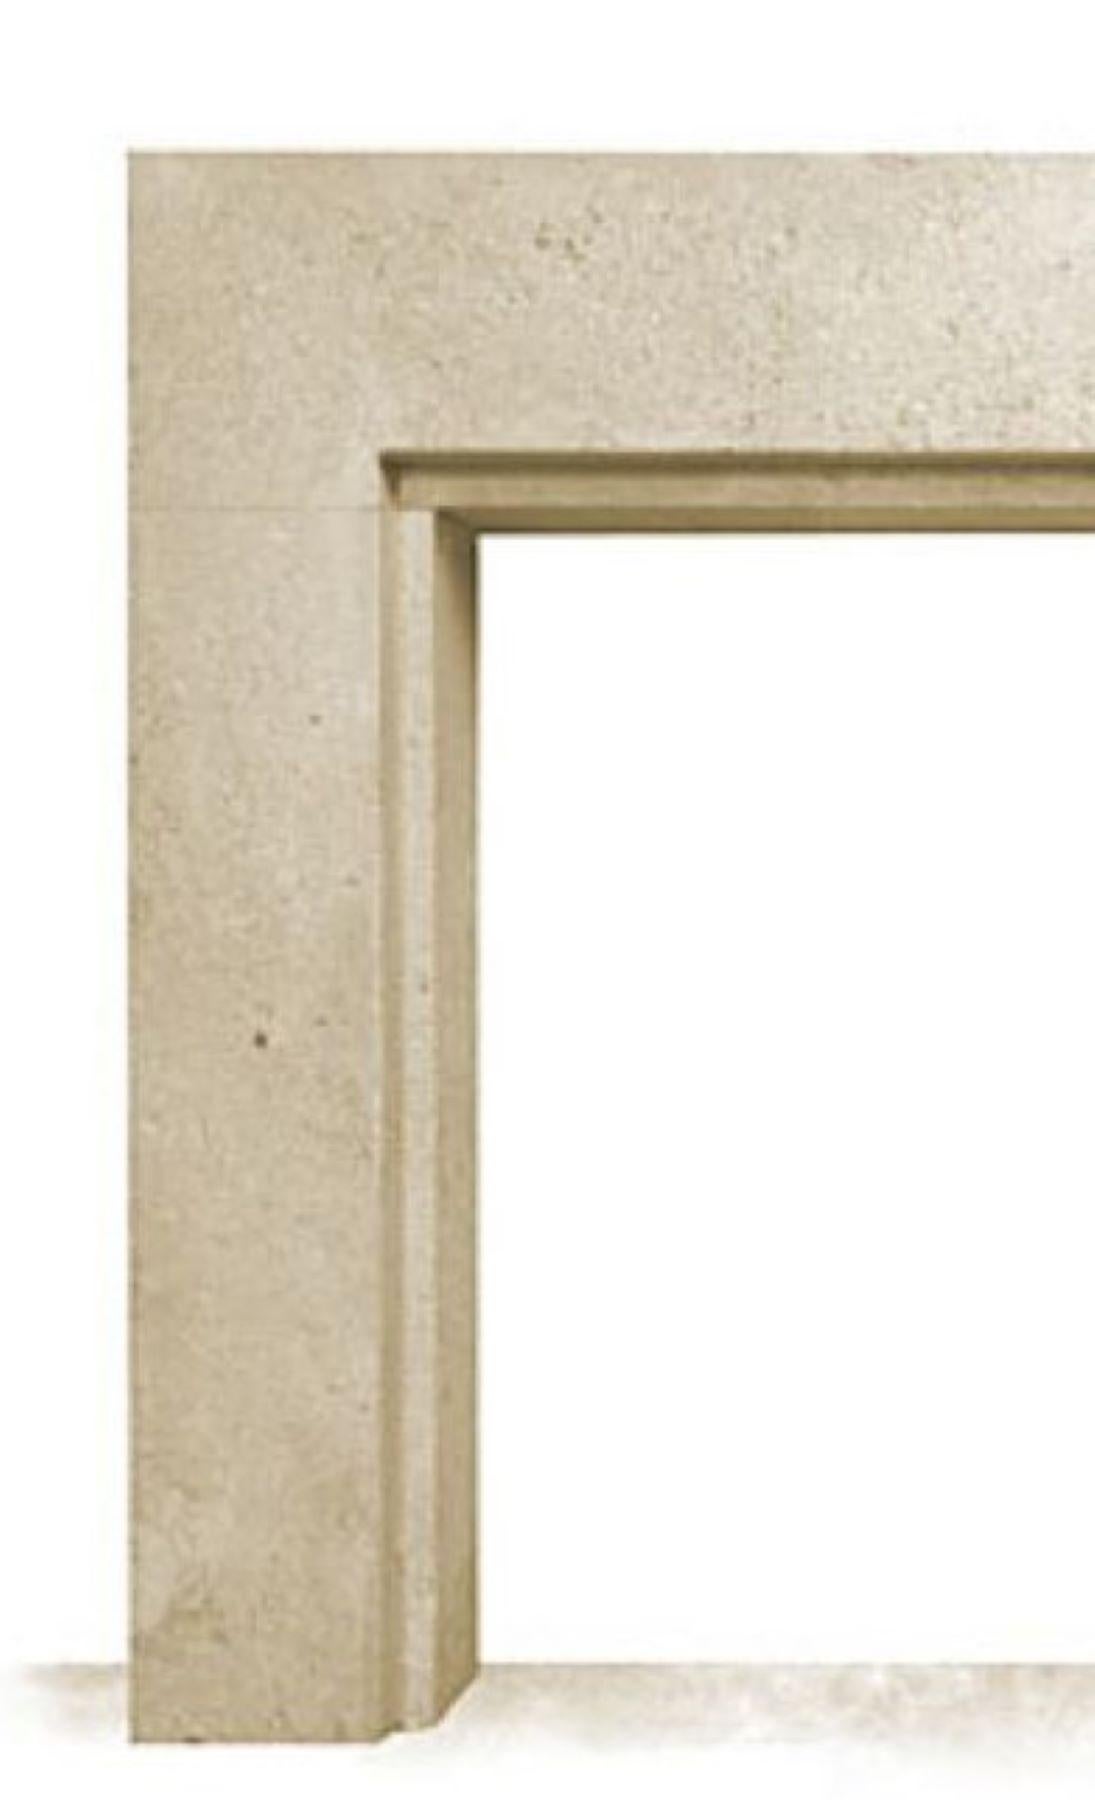 Der Minimalist ist eine schlichte, einfache, aber elegante, moderne Kaminumrandung mit einer Stufe um die Öffnung herum für zusätzliches visuelles Interesse und Tiefe.  Er passt perfekt zu einer zeitgenössischen, minimalistischen Einrichtung, aber